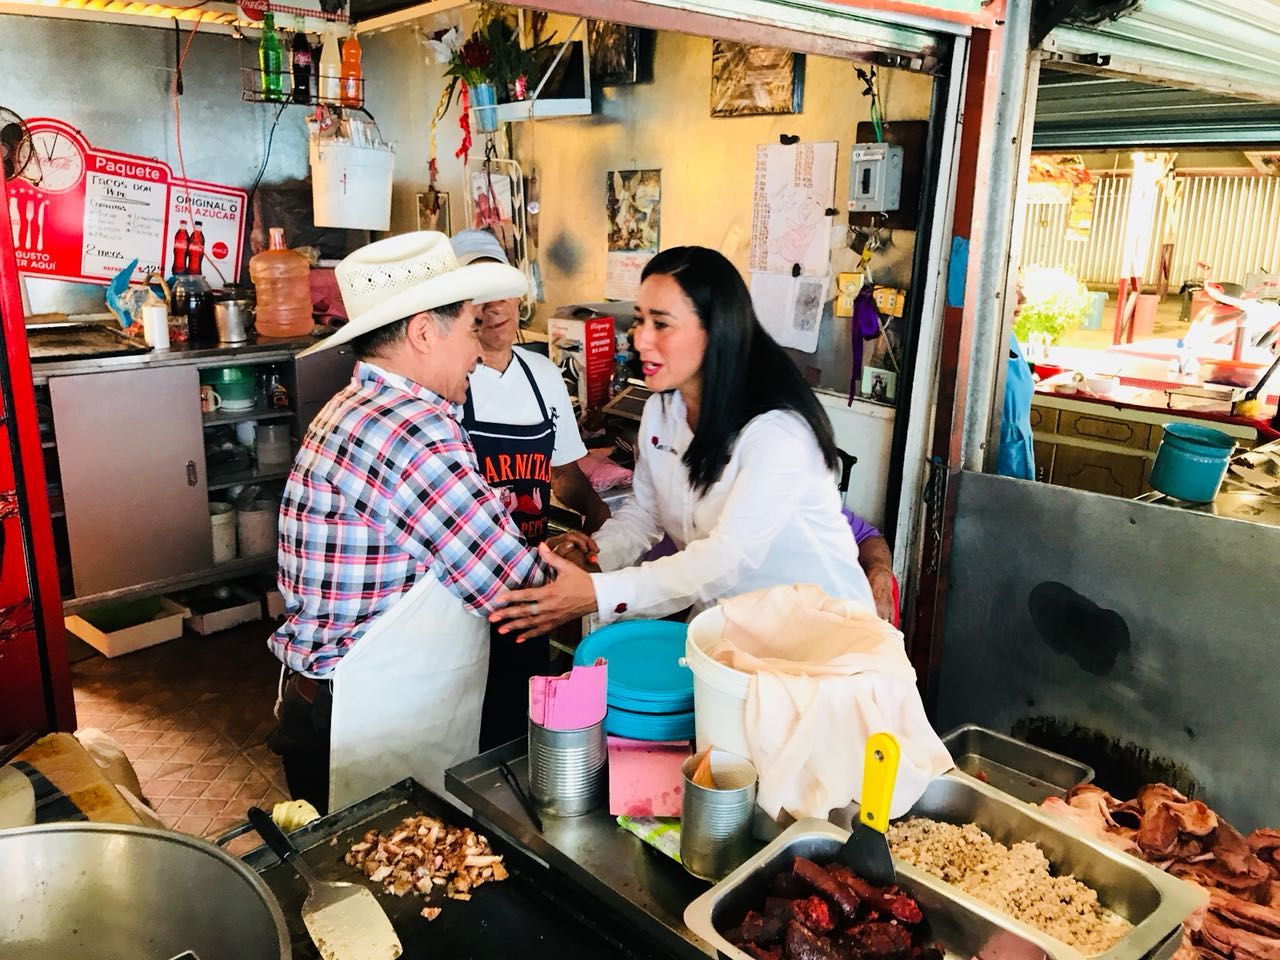 Karla Almazan busca el voto ciudadano en el "mercado de las vías" de Texcoco para ser diputada federal.